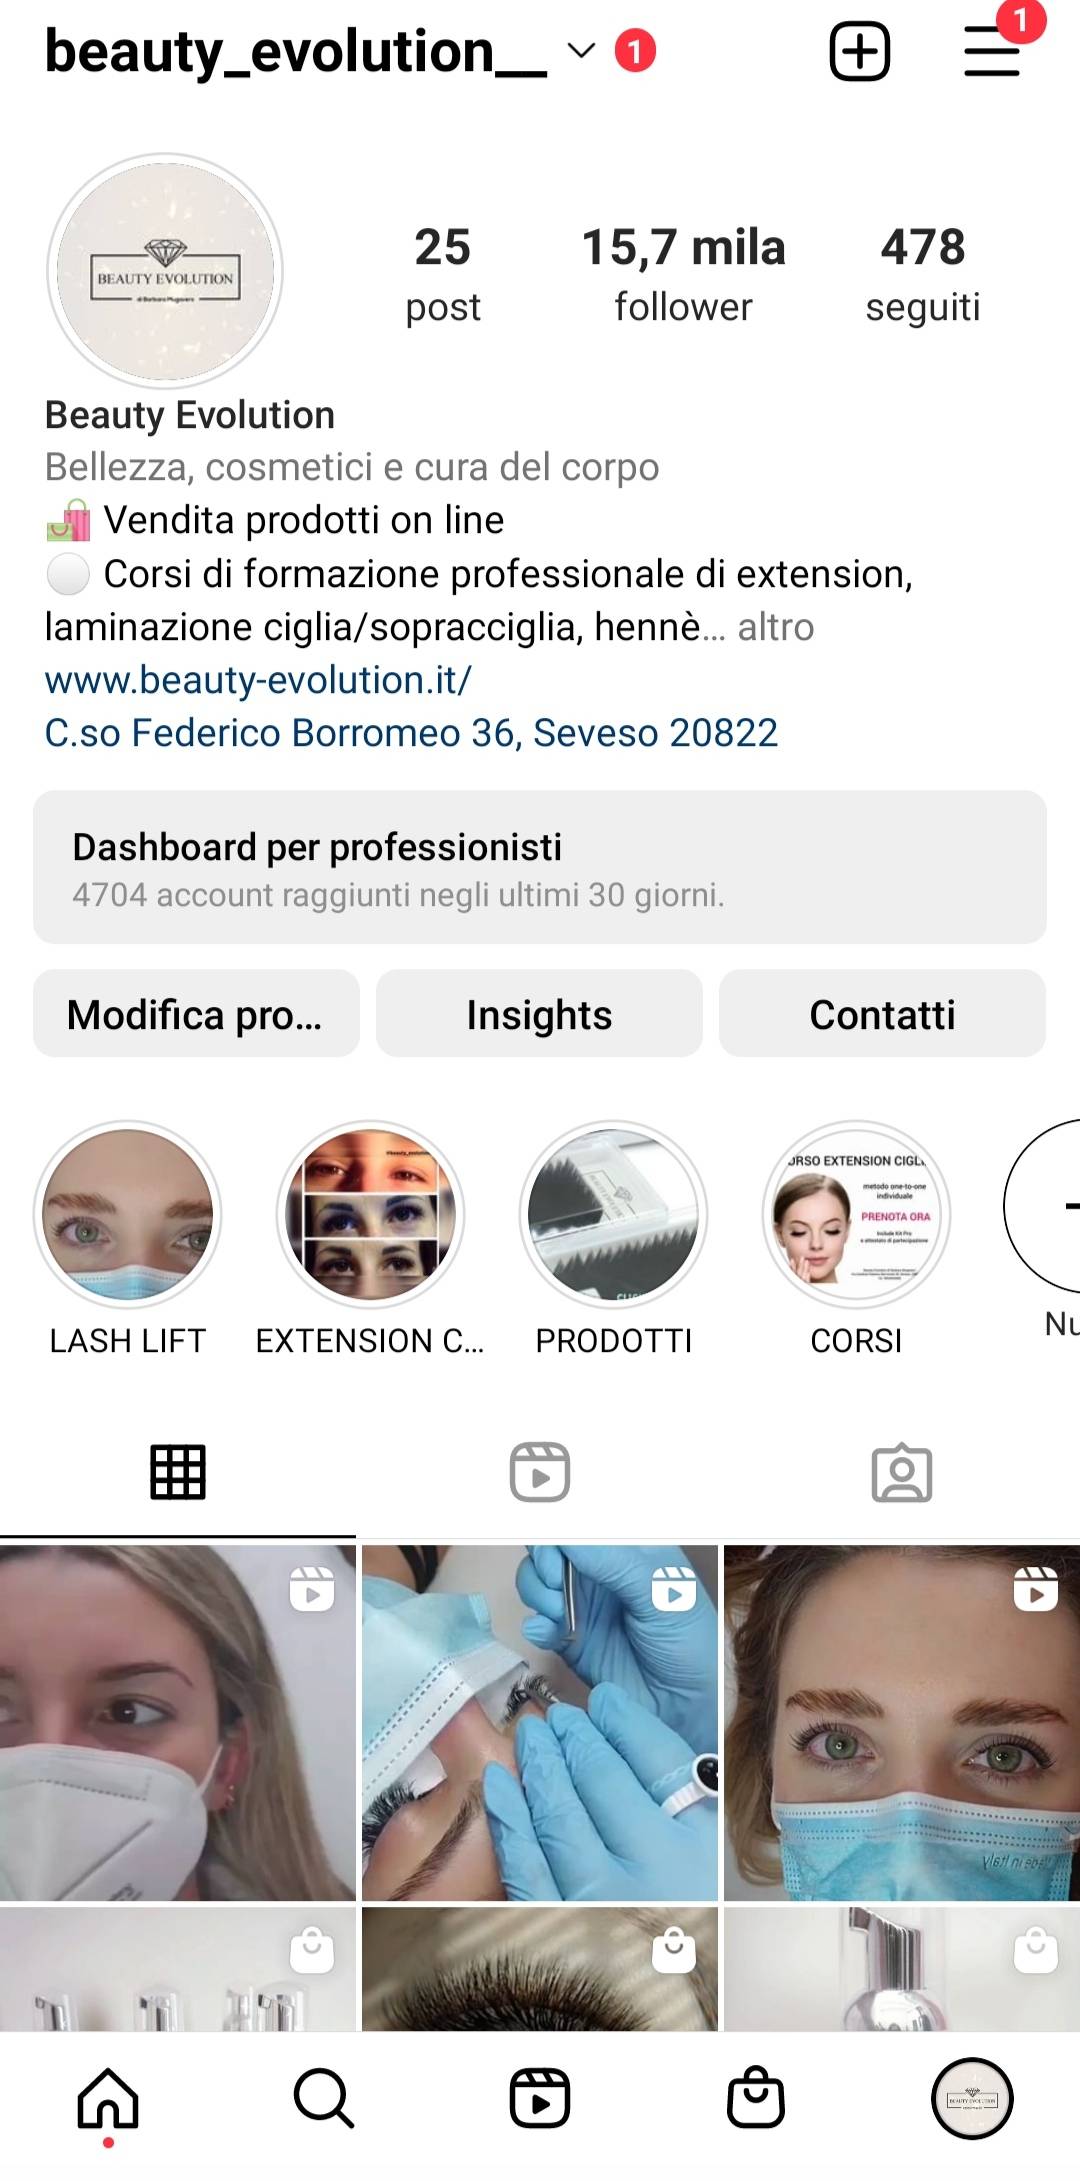 Profilo Instagram 15,7 mila followers pubblicizzo con storie e post